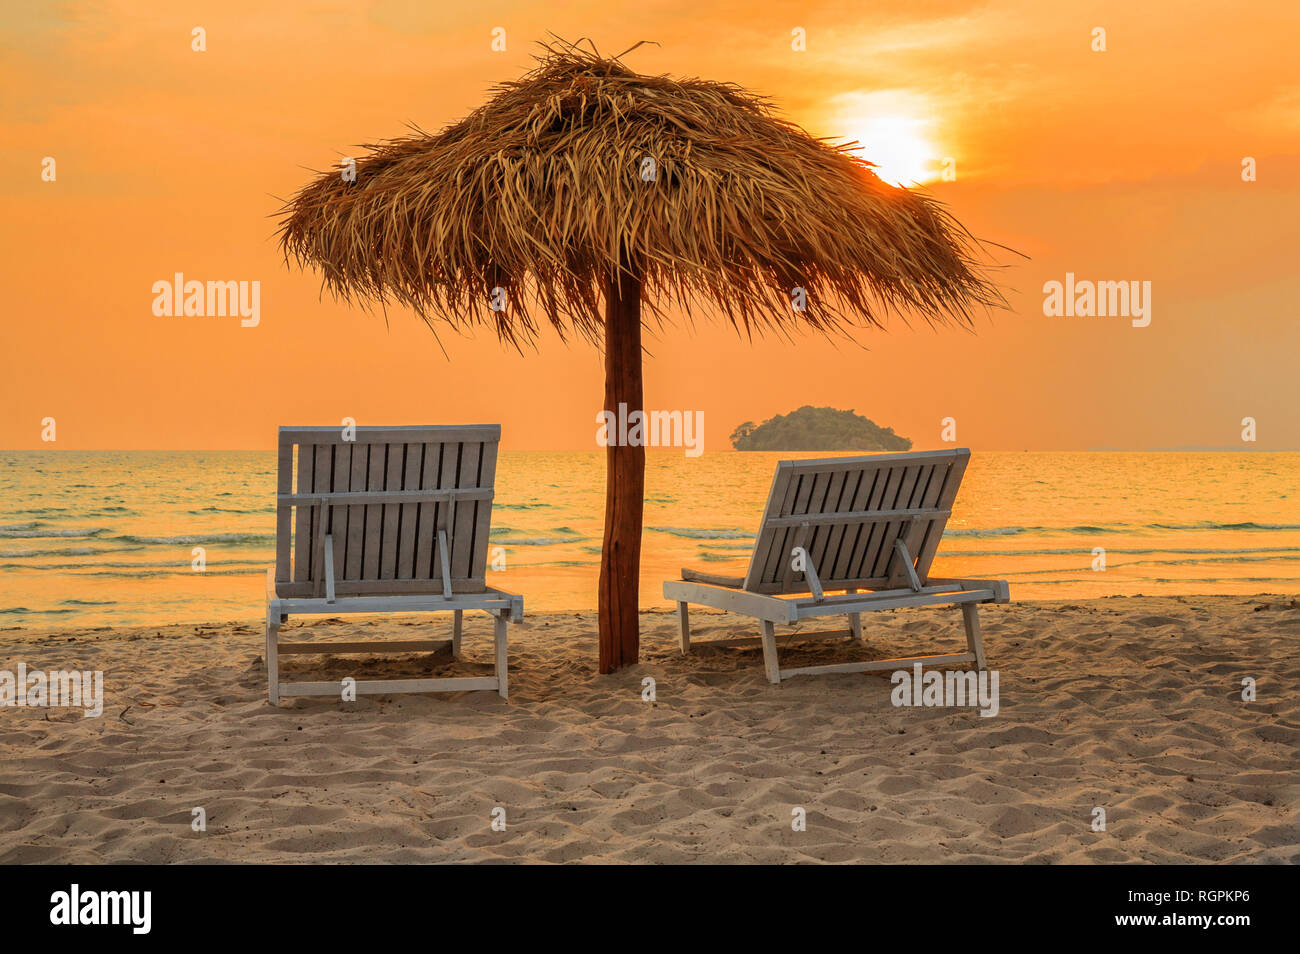 Spiaggia sedie a sdraio sotto gli ombrelloni sulla spiaggia tropicale al tramonto, in Cambogia, Sihanoukville Foto Stock